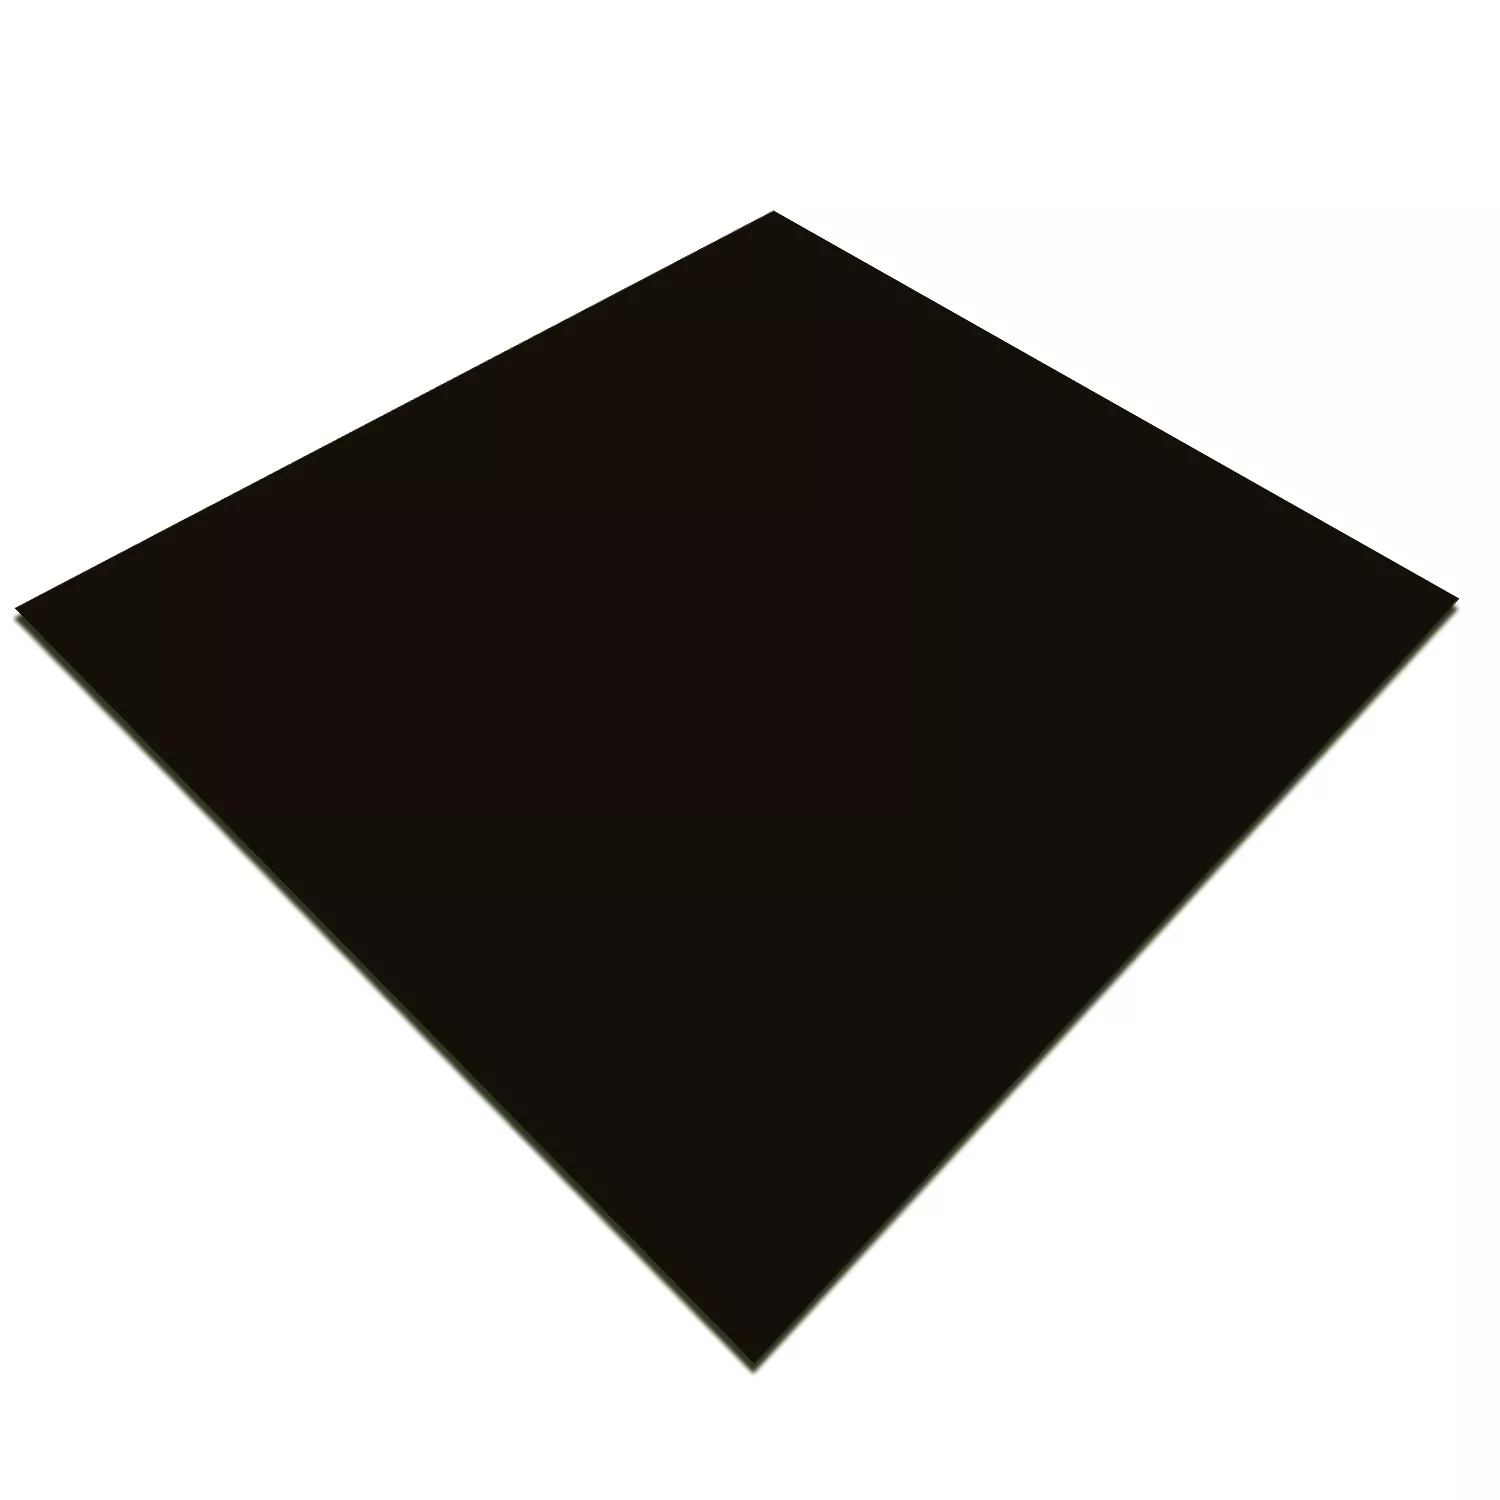 Sample Floor Tiles Majesta Black Uni Polished 30x30cm